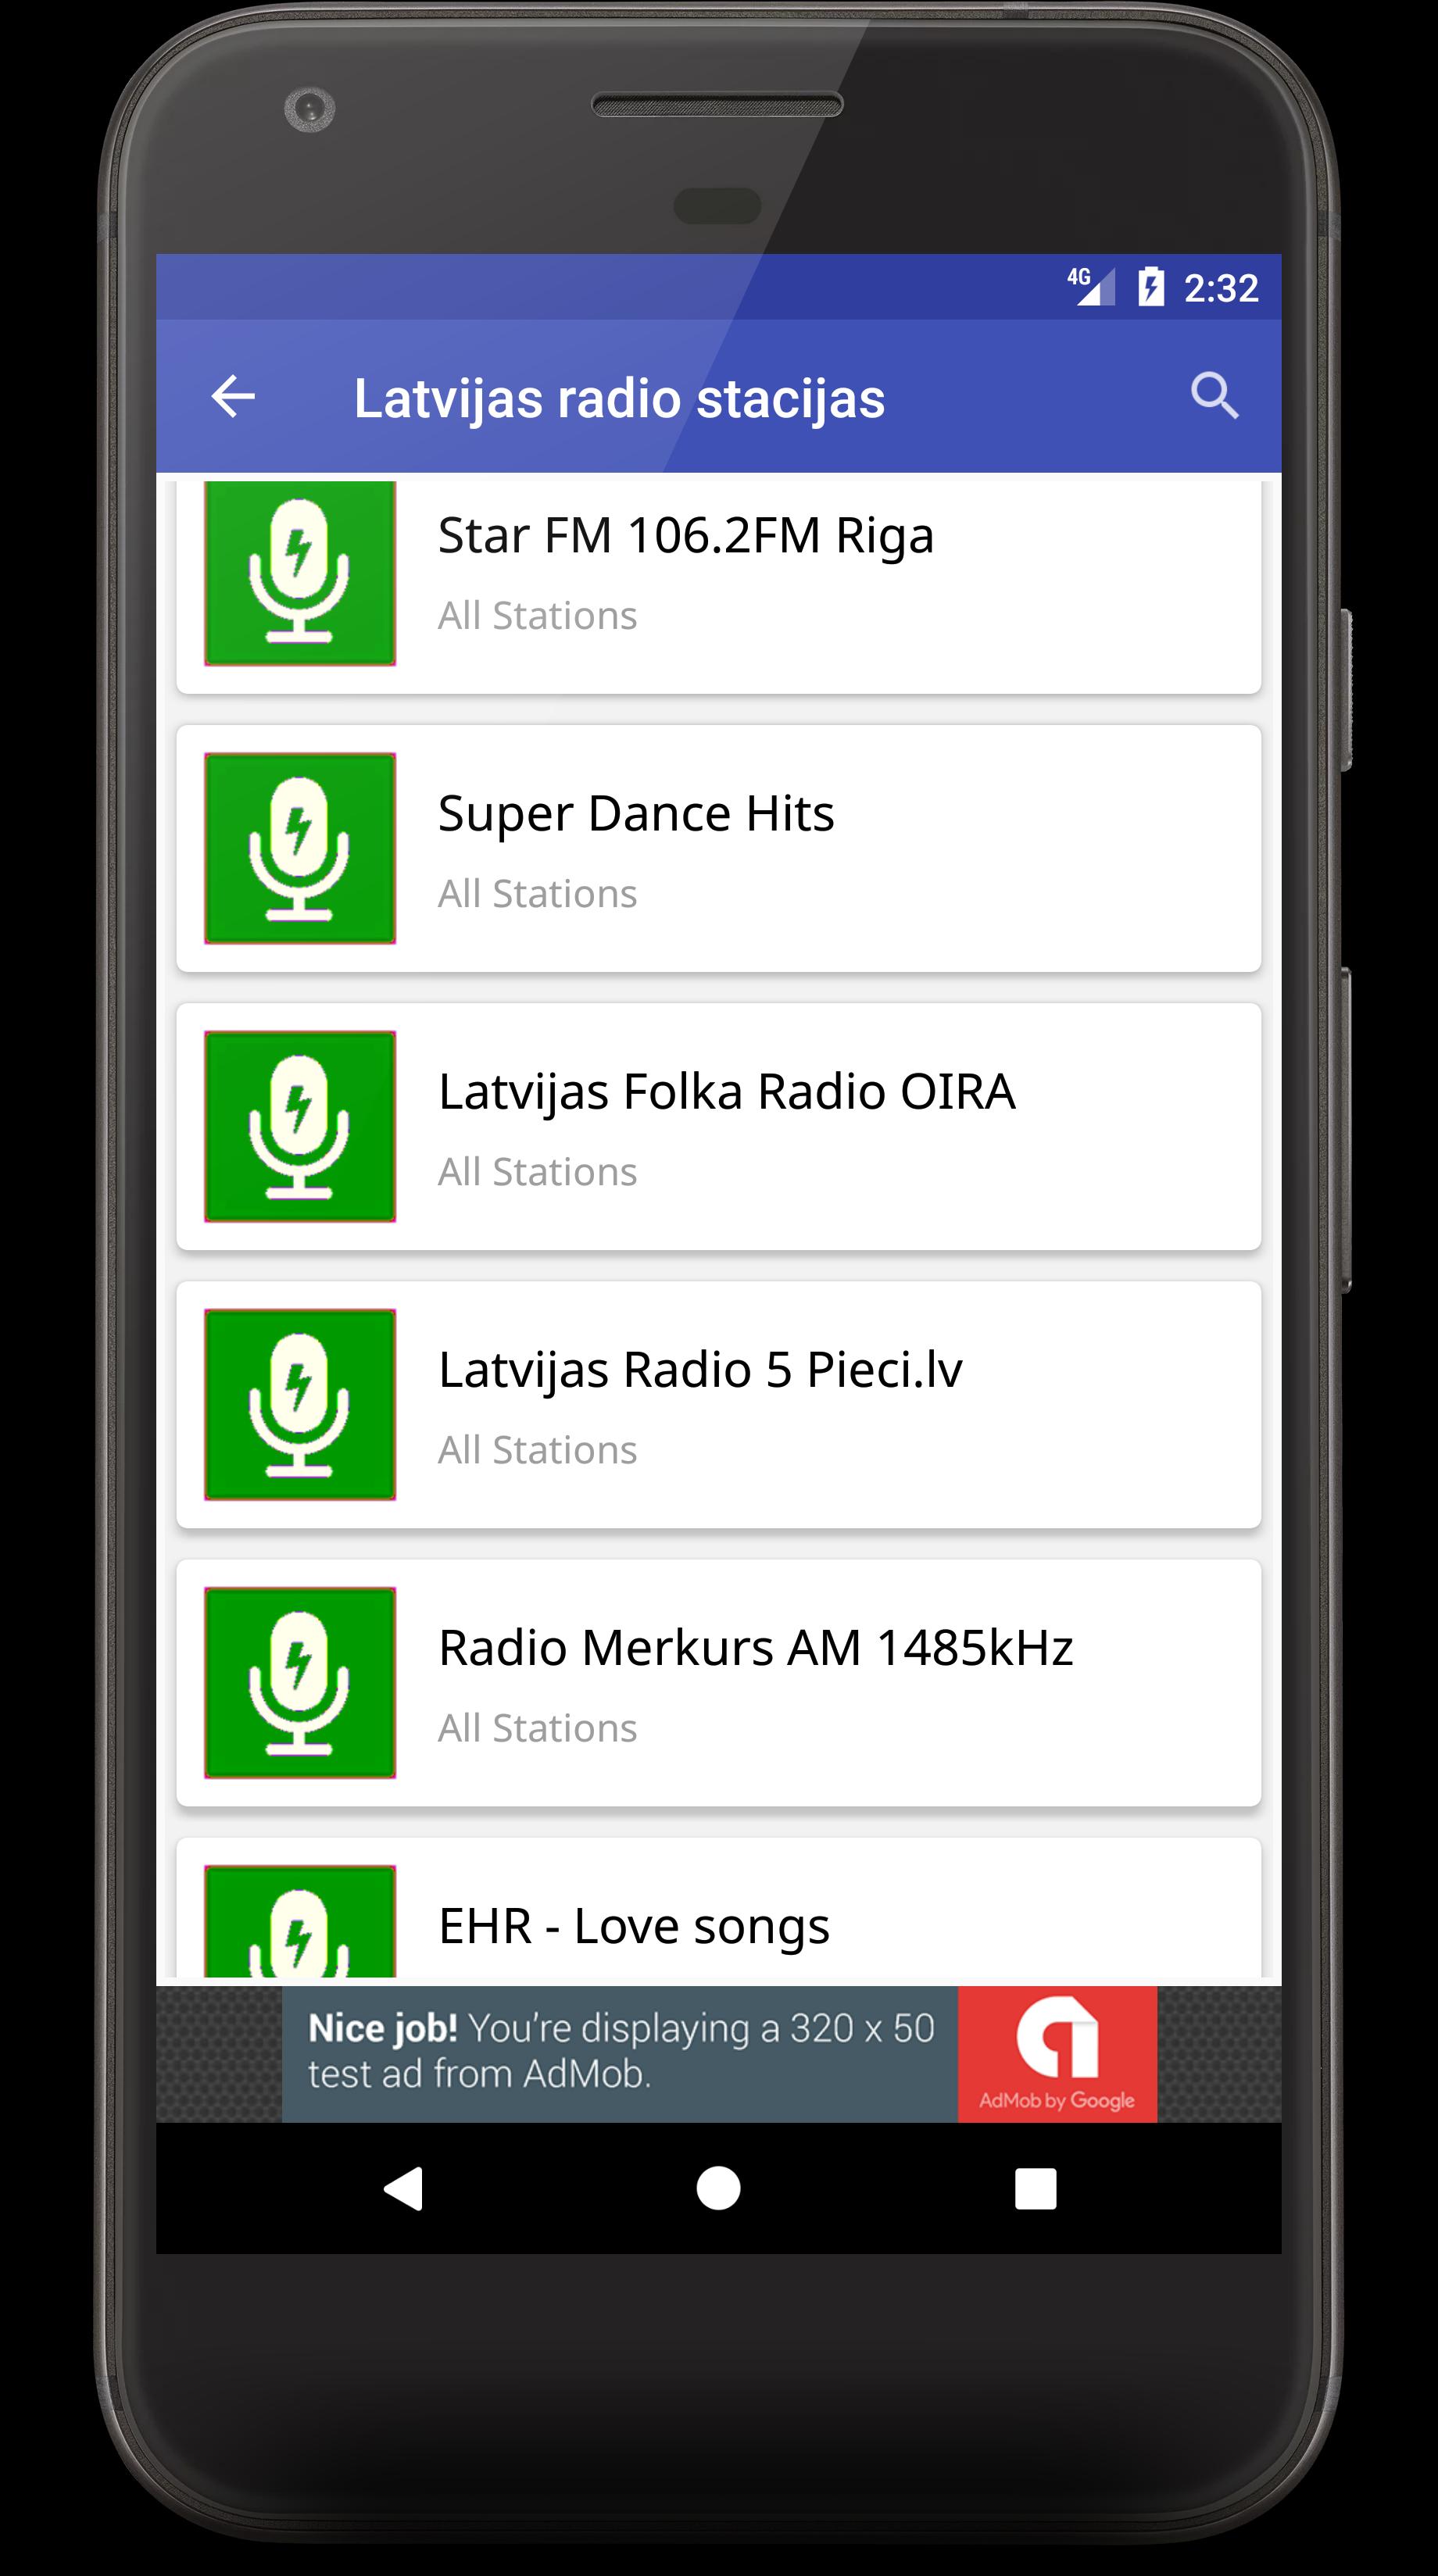 Latvijas radio stacijas for Android - APK Download